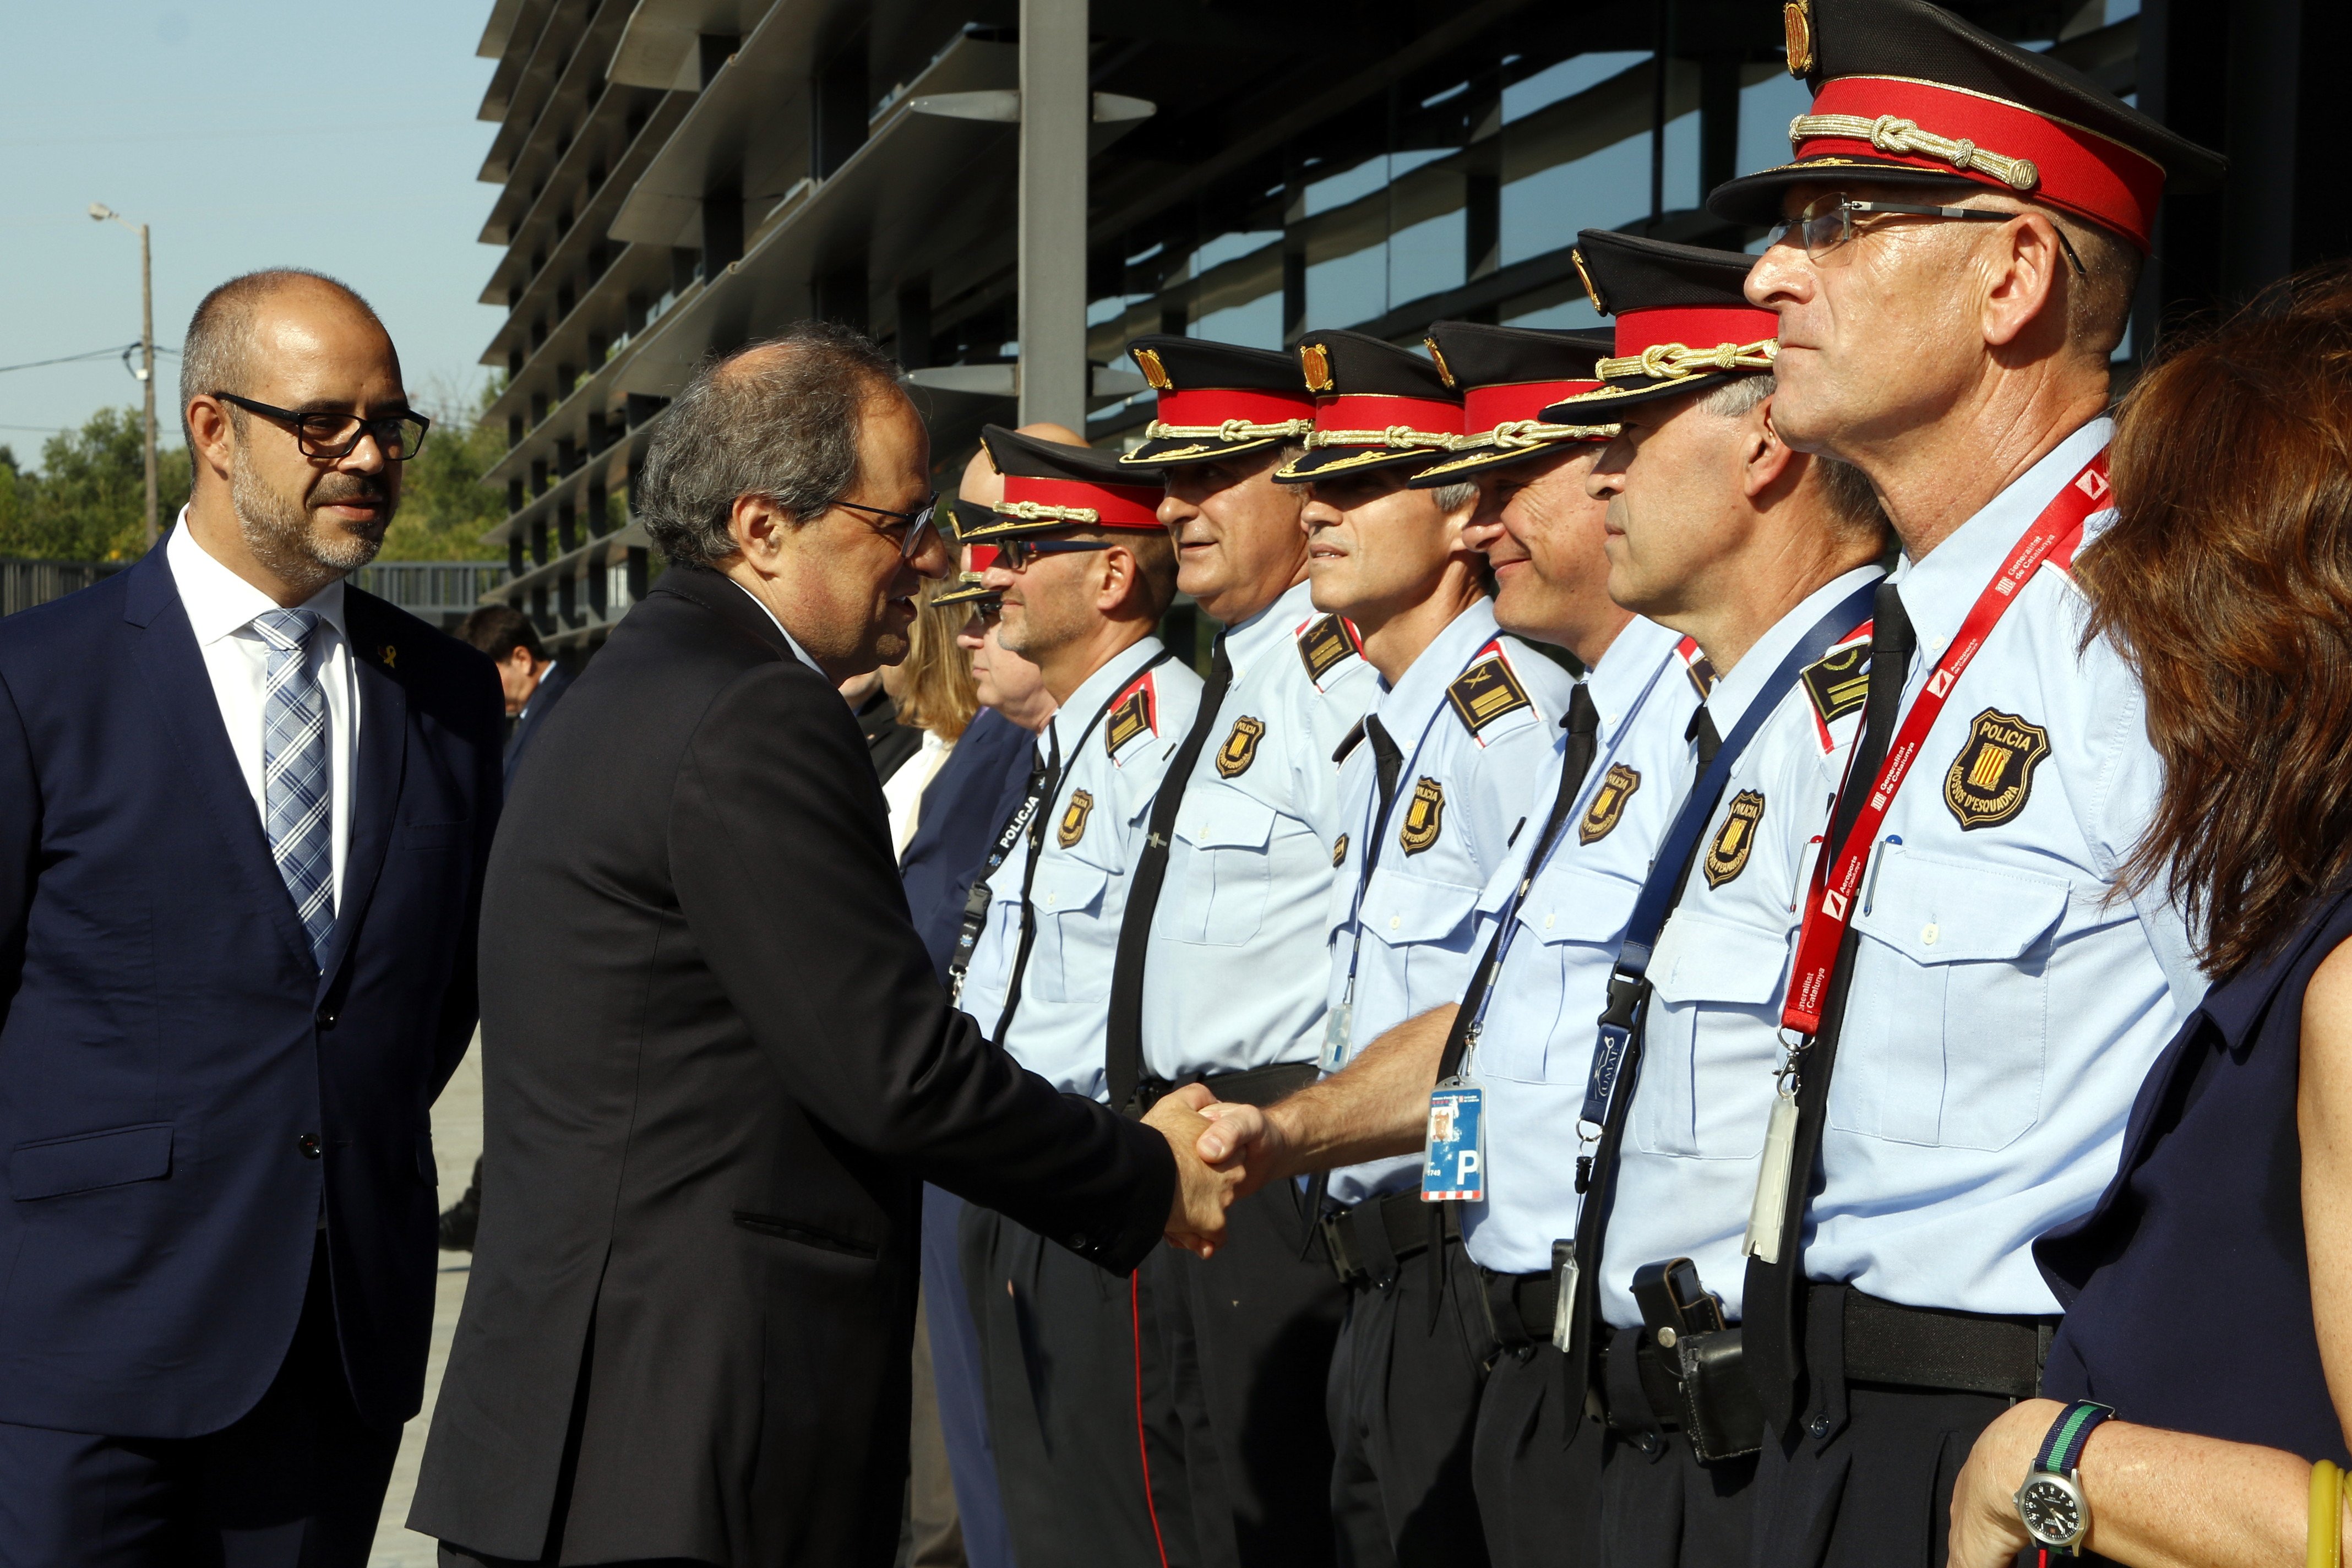 Presidència crea un equipo específico de seguridad para el president, expresidents y el Palau